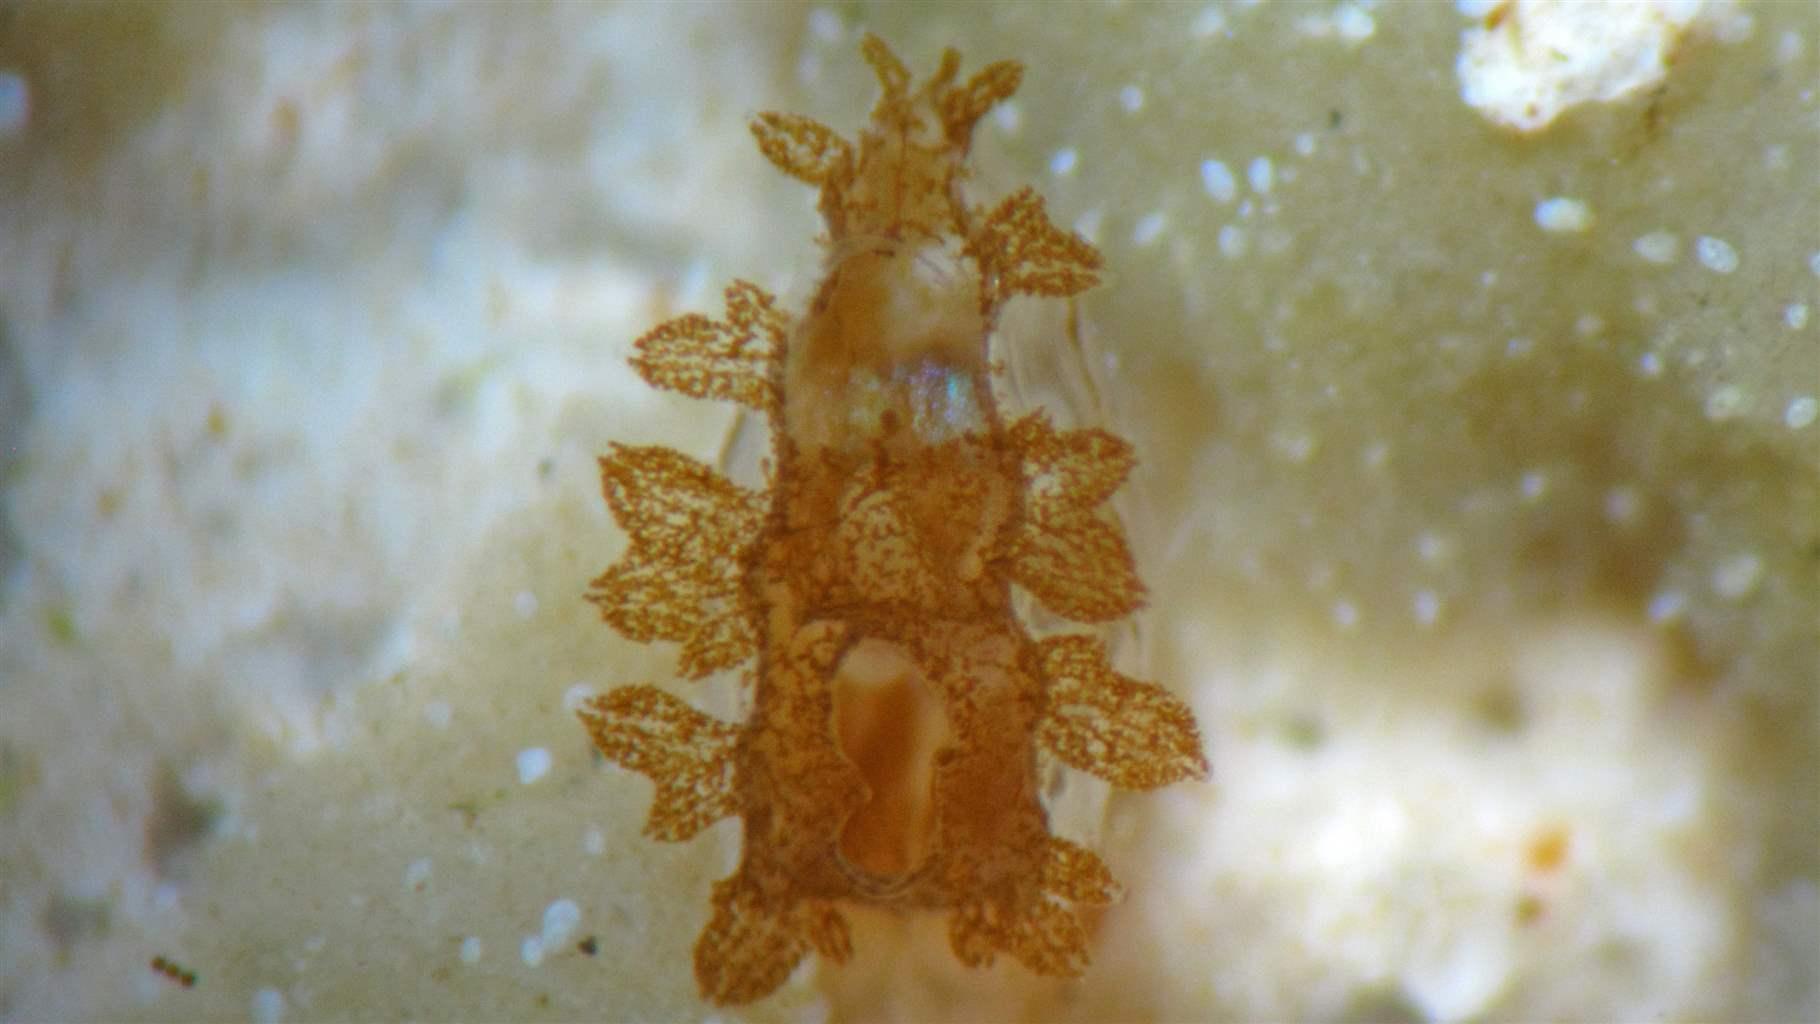 La vârsta de două luni, această scoici uriașă canelată juvenilă (Tridacna squamosa) crescută în laborator a creat o rețea de tubuli care găzduiesc microalge Symbiodiniaceae. 